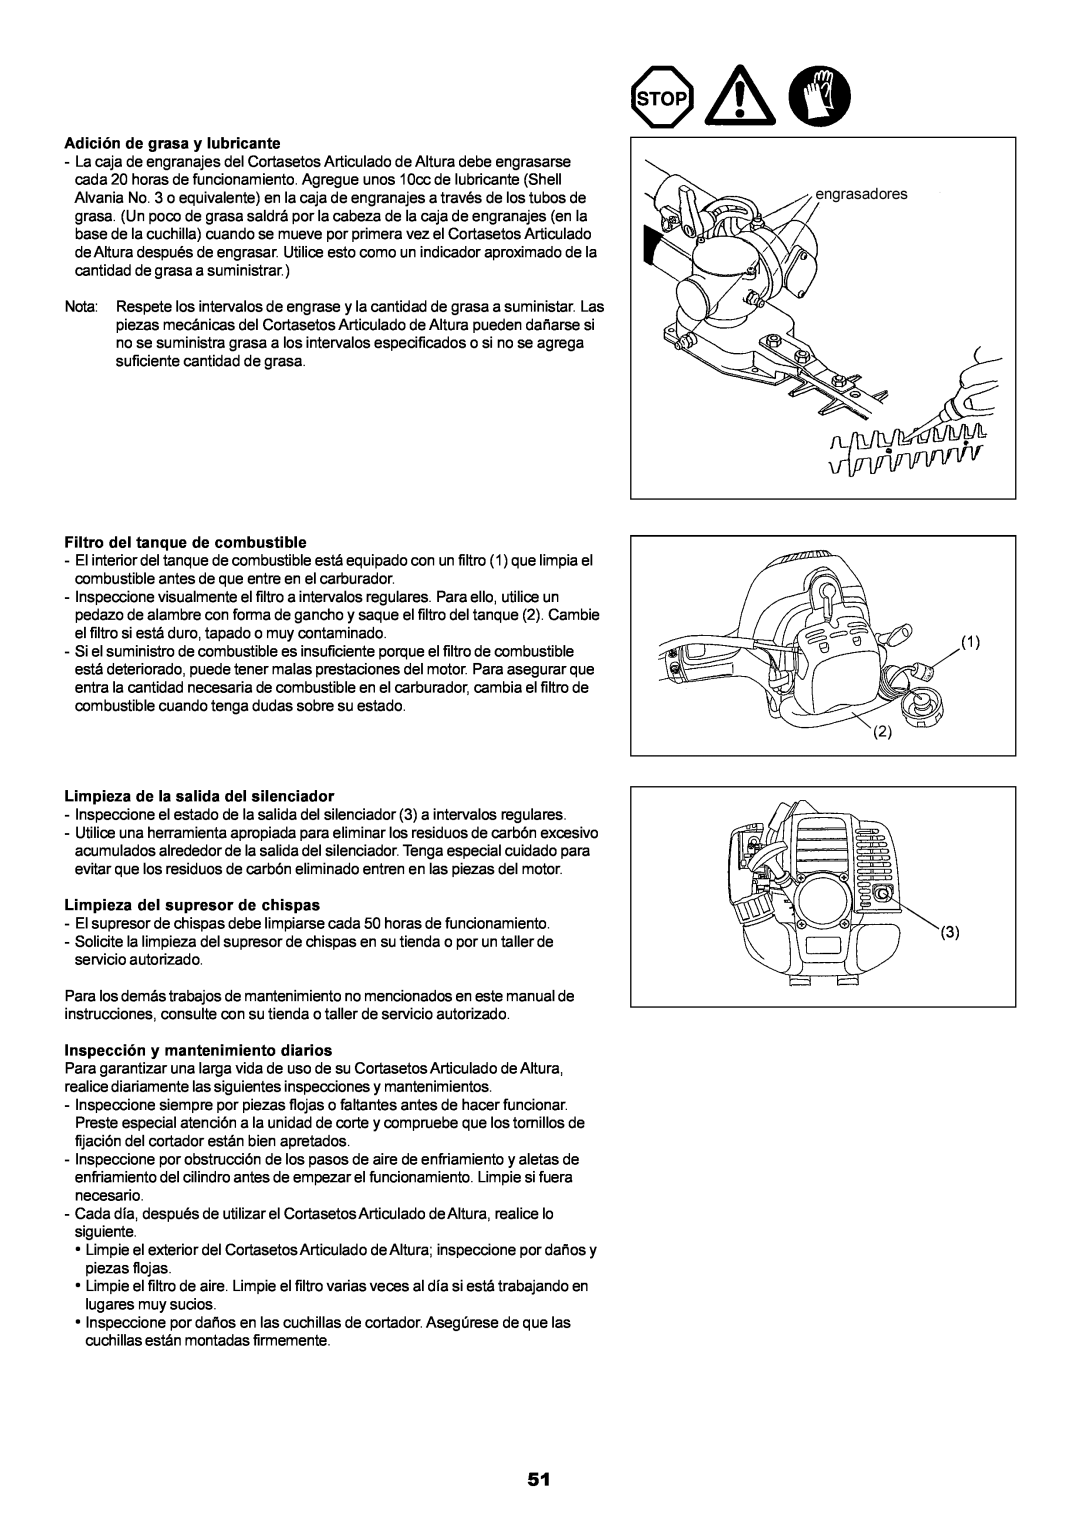 Dolmar MH-2556 Adición de grasa y lubricante, Filtro del tanque de combustible, Limpieza de la salida del silenciador 